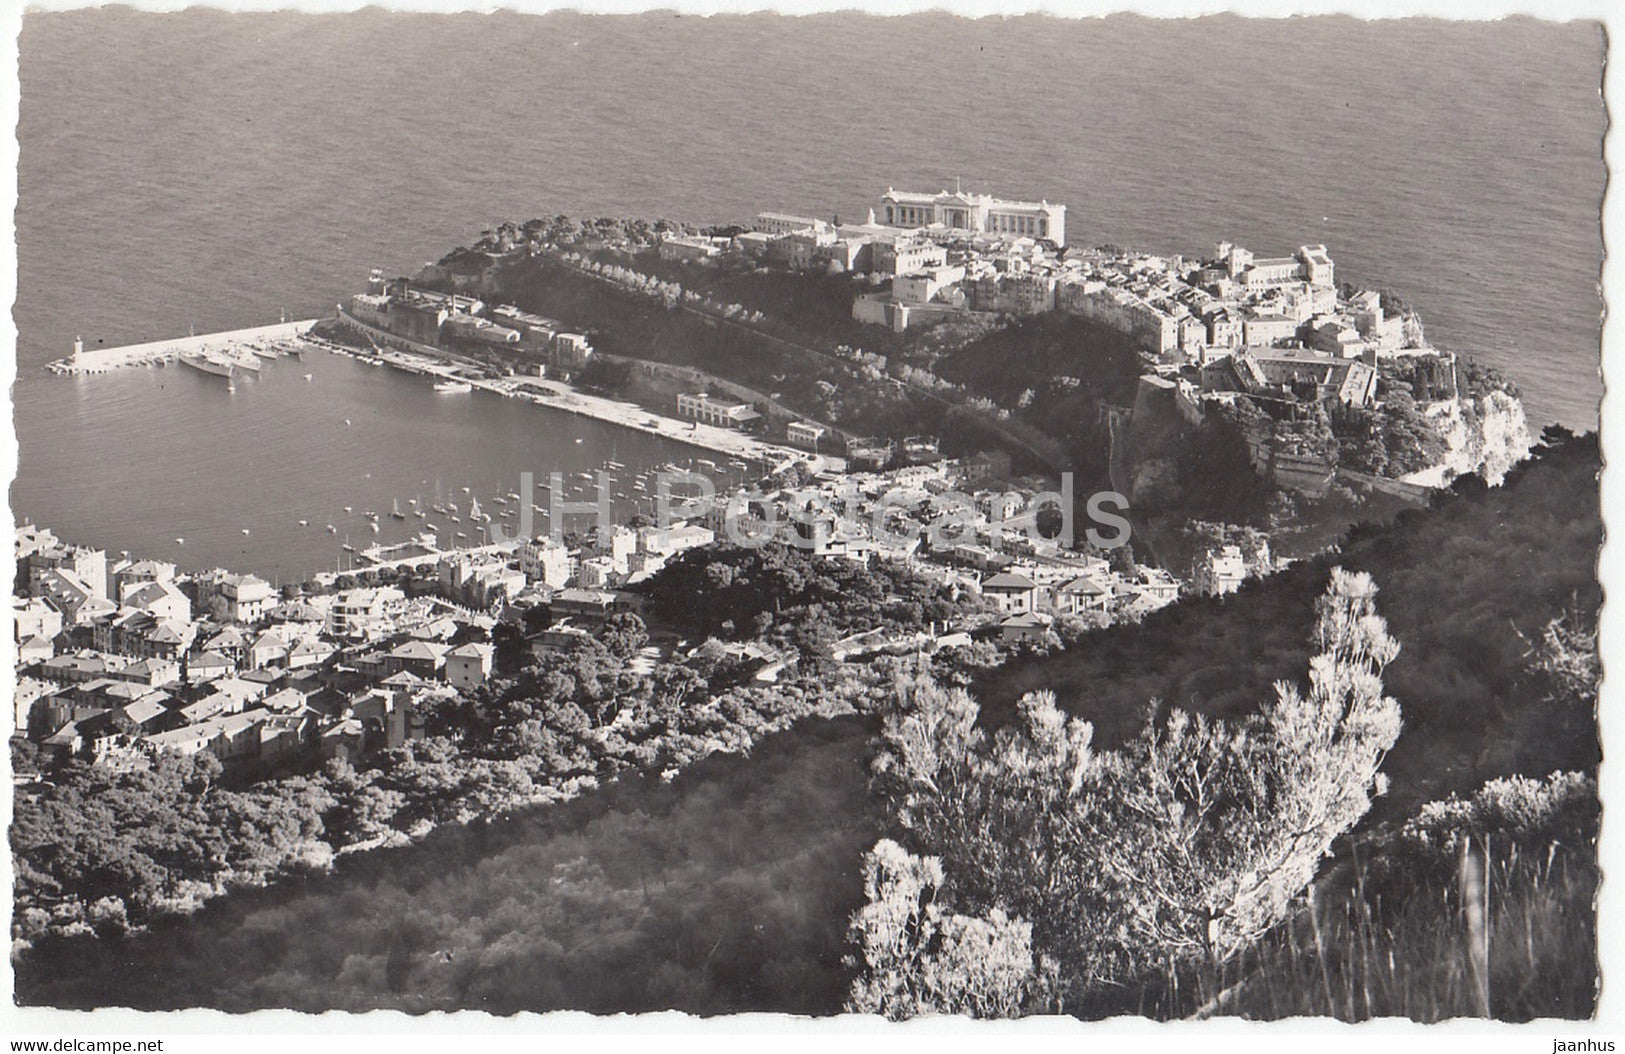 Vue sur le port et le rocher de Monaco - old postcard - 1953 - Monaco - used - JH Postcards